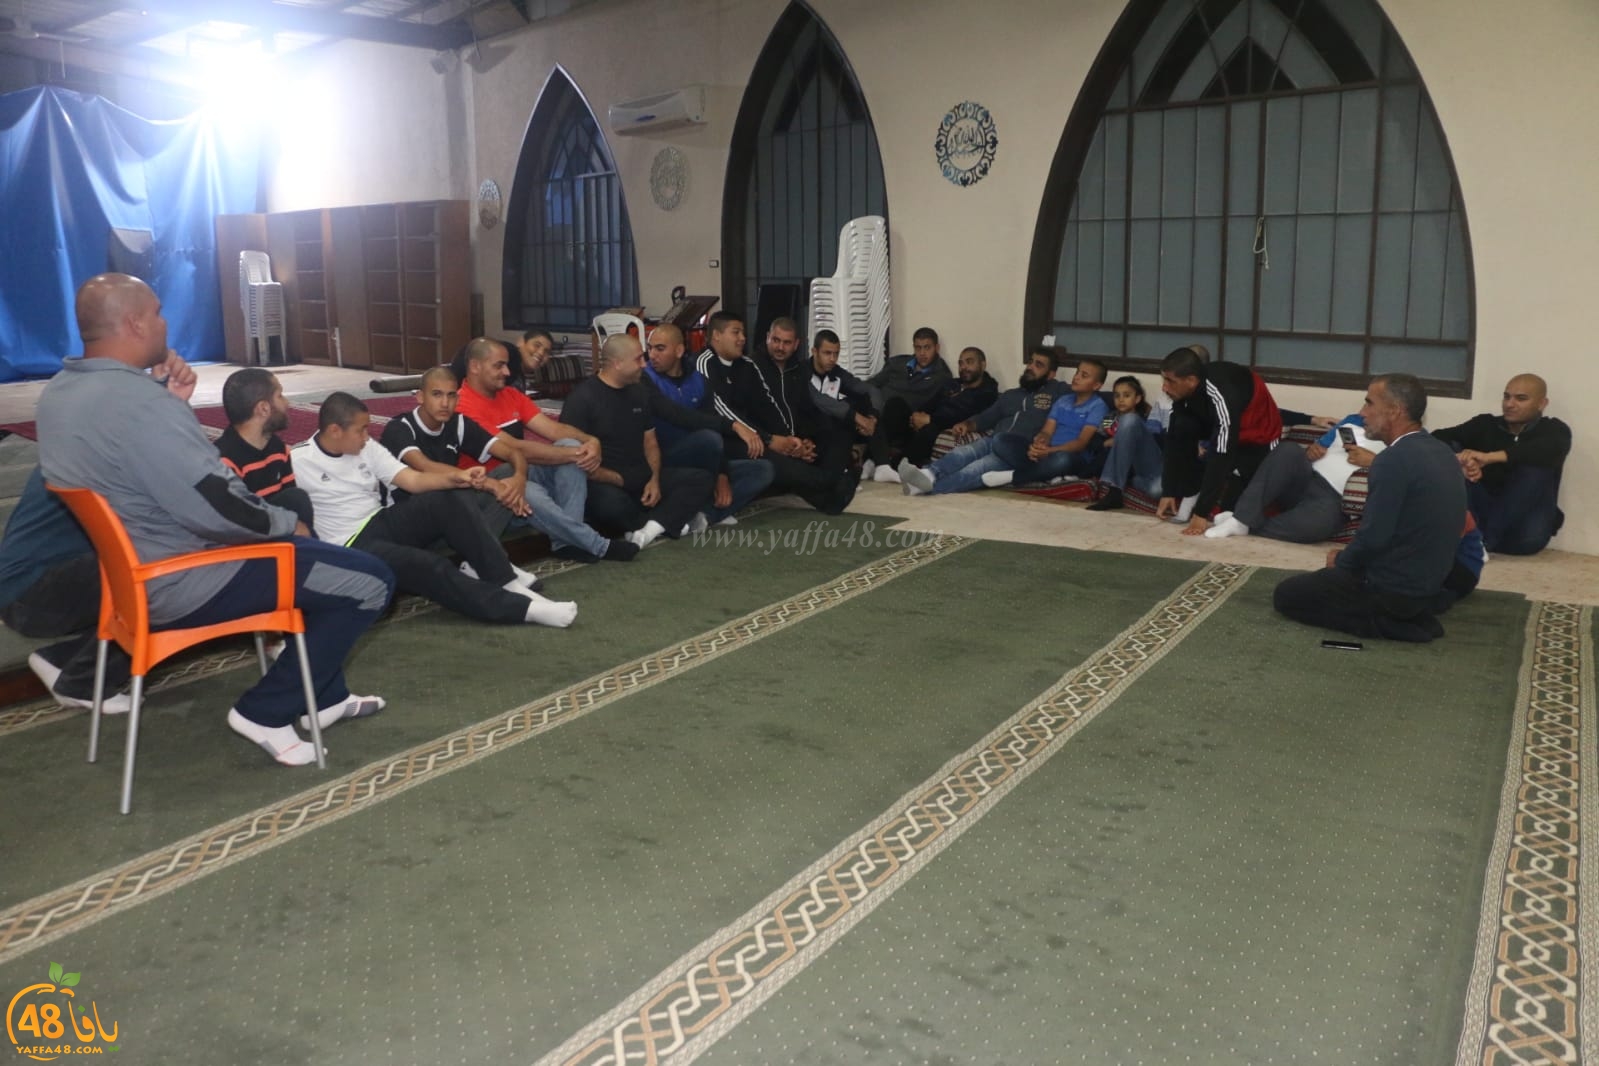 بالصور: جمعية يافا تعقد اجتماعاً في مسجد السكسك استعداداً لاستقبال شهر رمضان المبارك